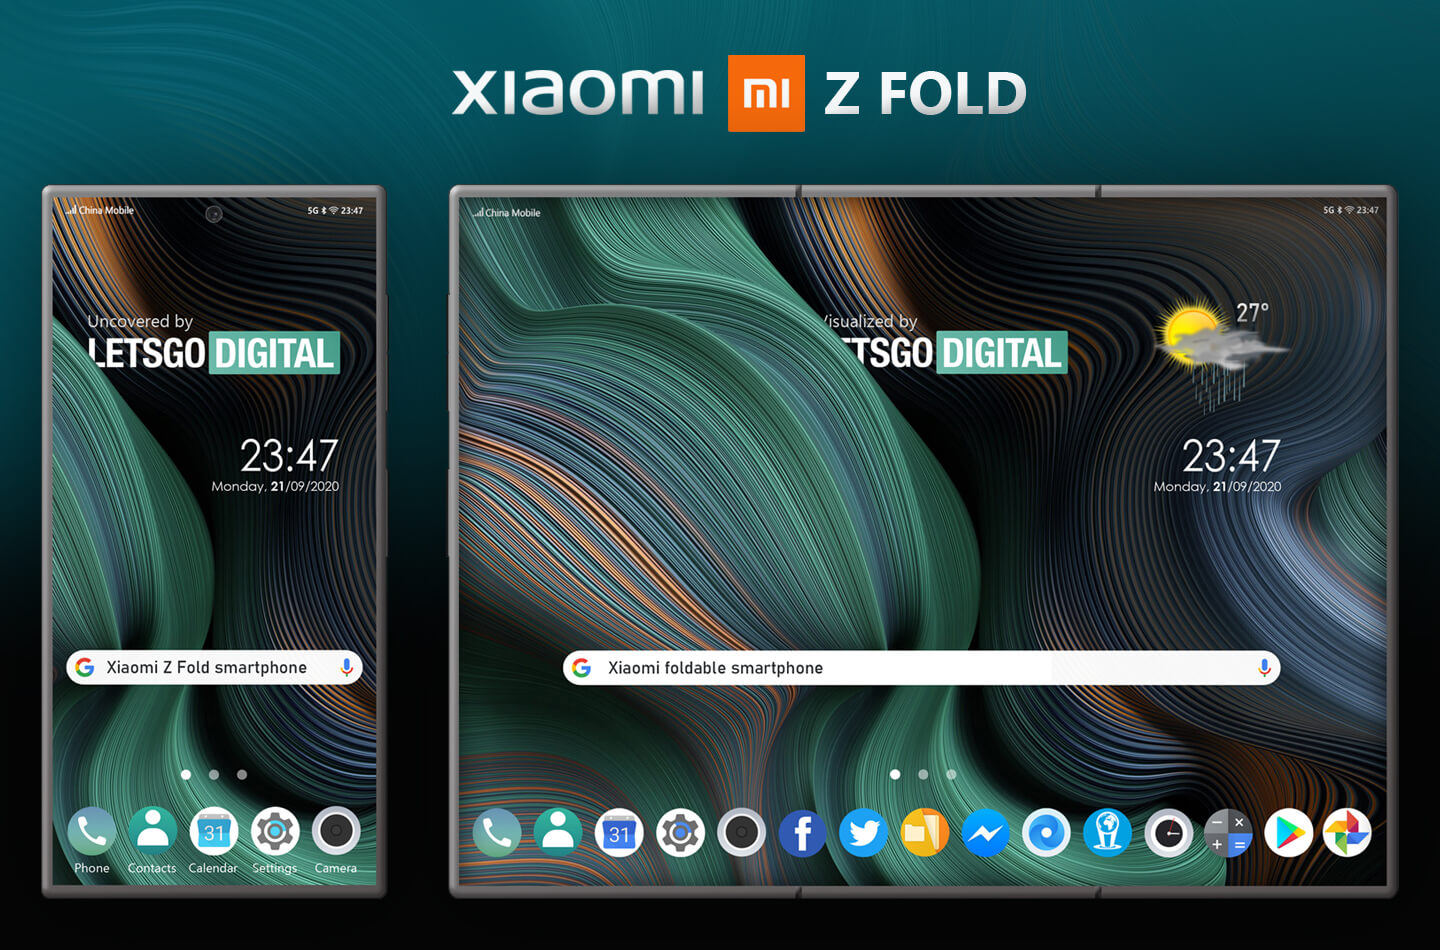 Xiaomi Z Fold smartphone